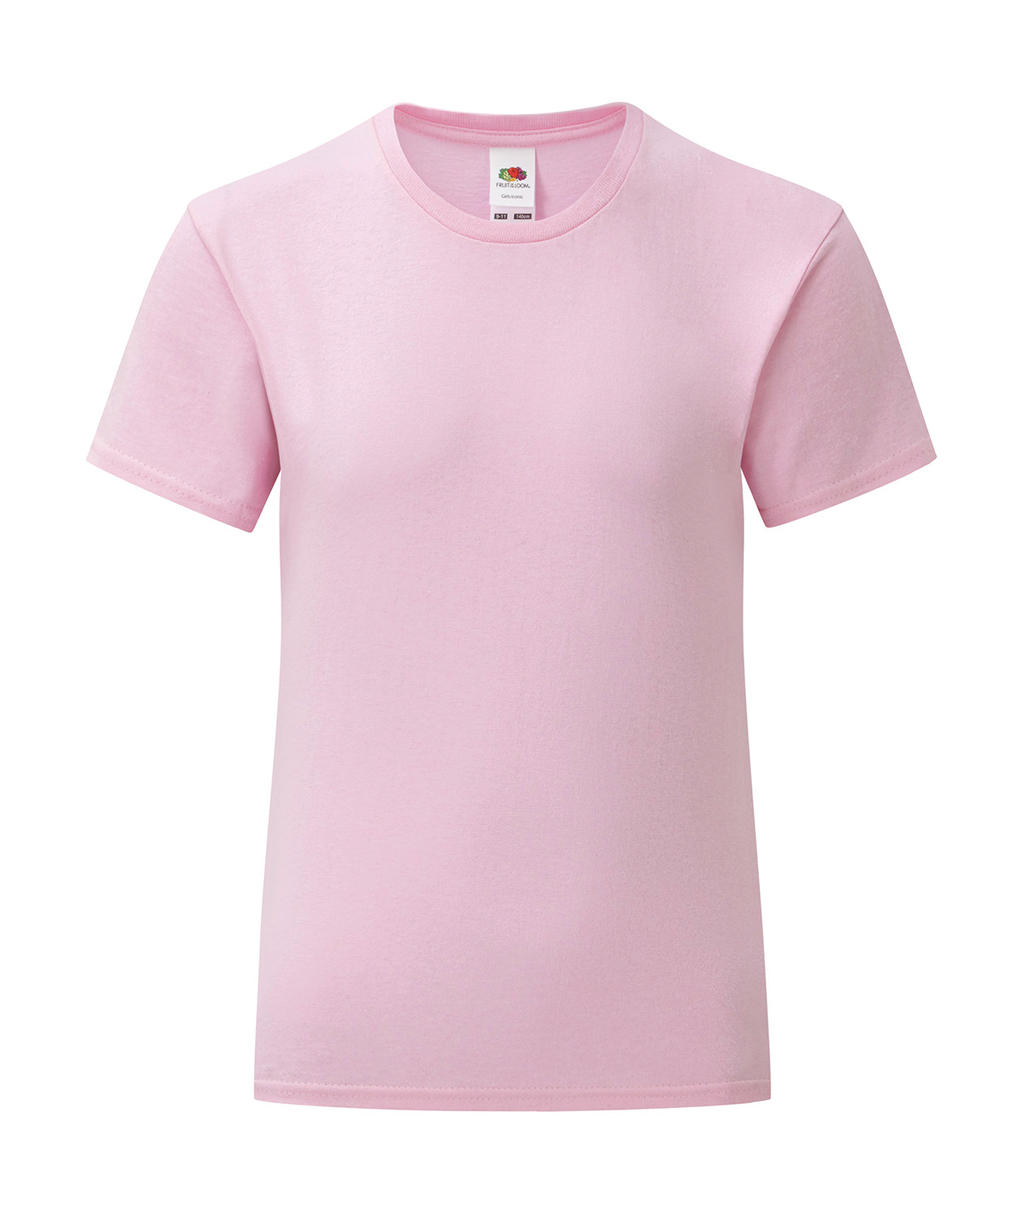 Dívčí tričko Iconic T 150 Barva: růžová, Velikost: 3-4 roky